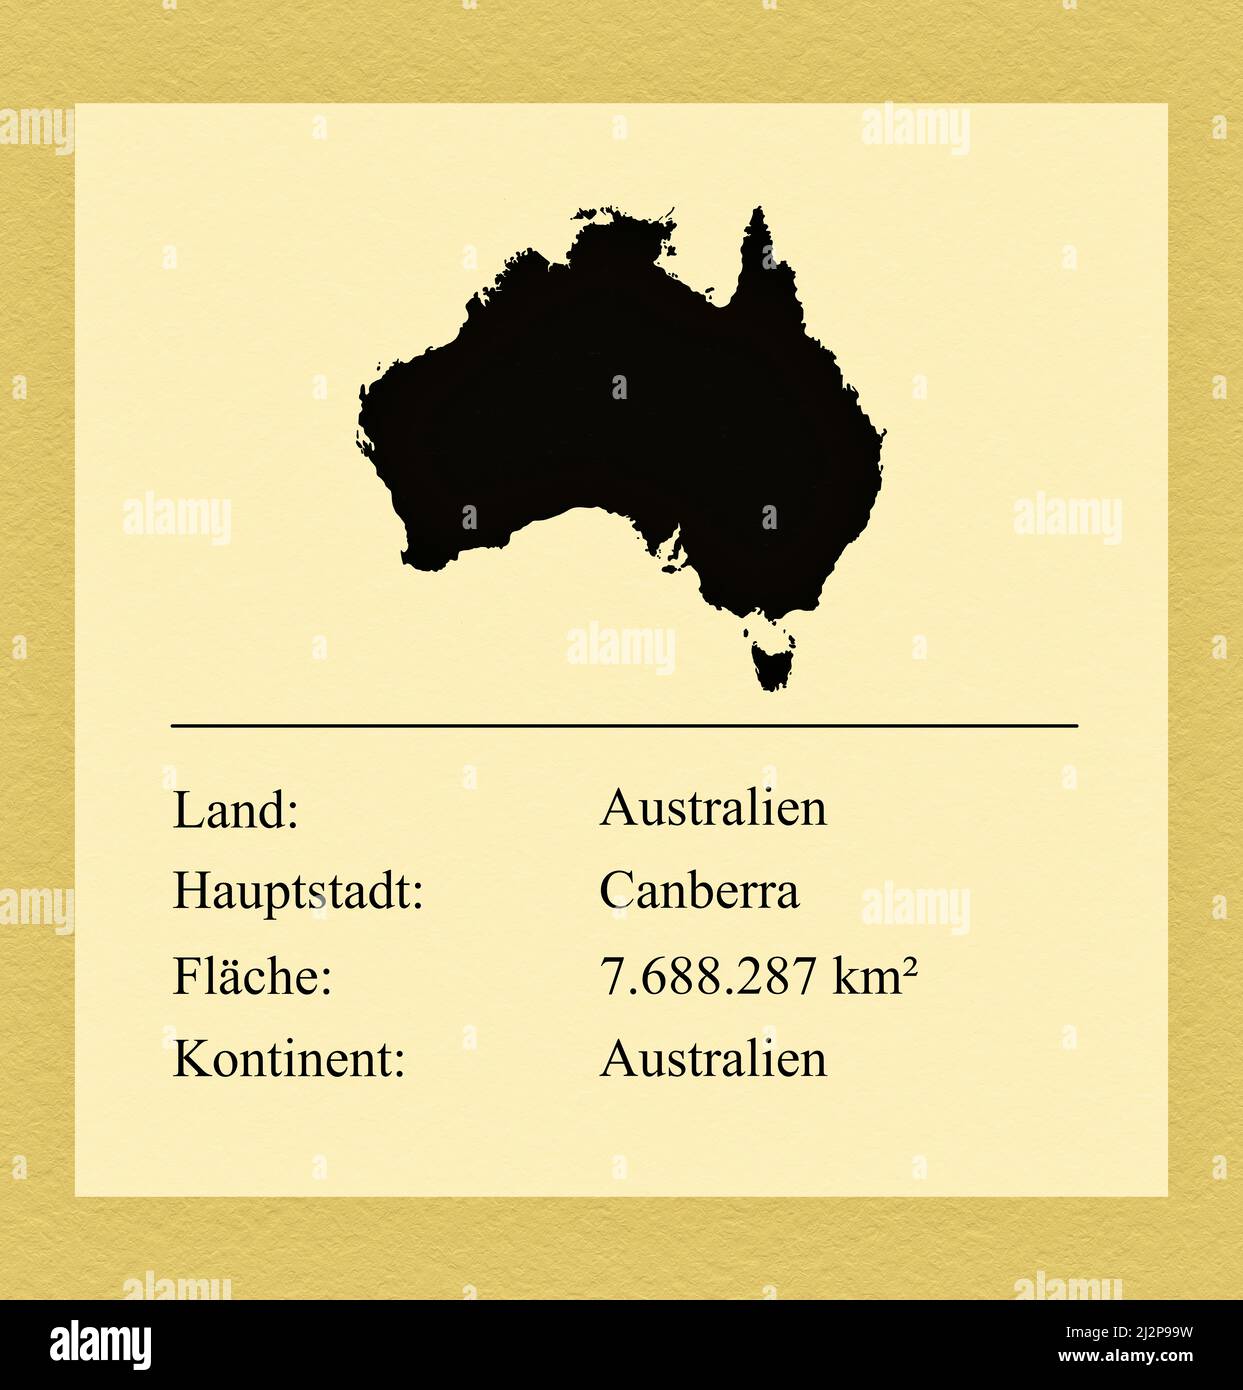 Umrisse des Landes Australien, darunter ein kleiner Steckbrief mit Ländernamen, Hauptstadt, Fläche und Kontinent Stock Photo